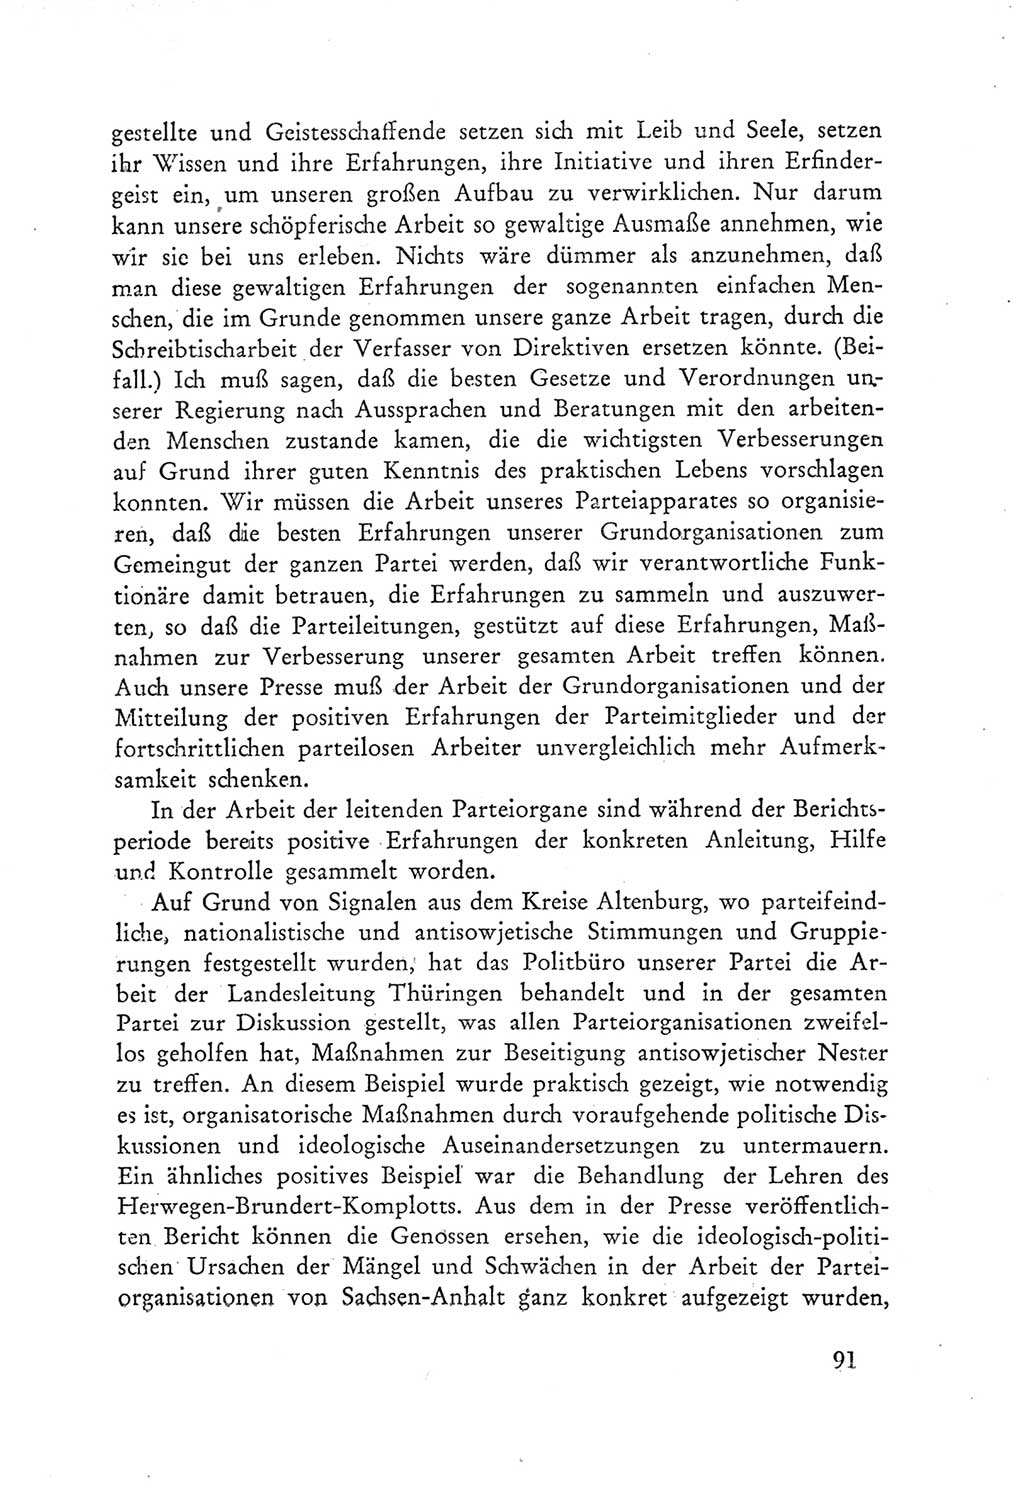 Protokoll der Verhandlungen des Ⅲ. Parteitages der Sozialistischen Einheitspartei Deutschlands (SED) [Deutsche Demokratische Republik (DDR)] 1950, Band 1, Seite 91 (Prot. Verh. Ⅲ. PT SED DDR 1950, Bd. 1, S. 91)